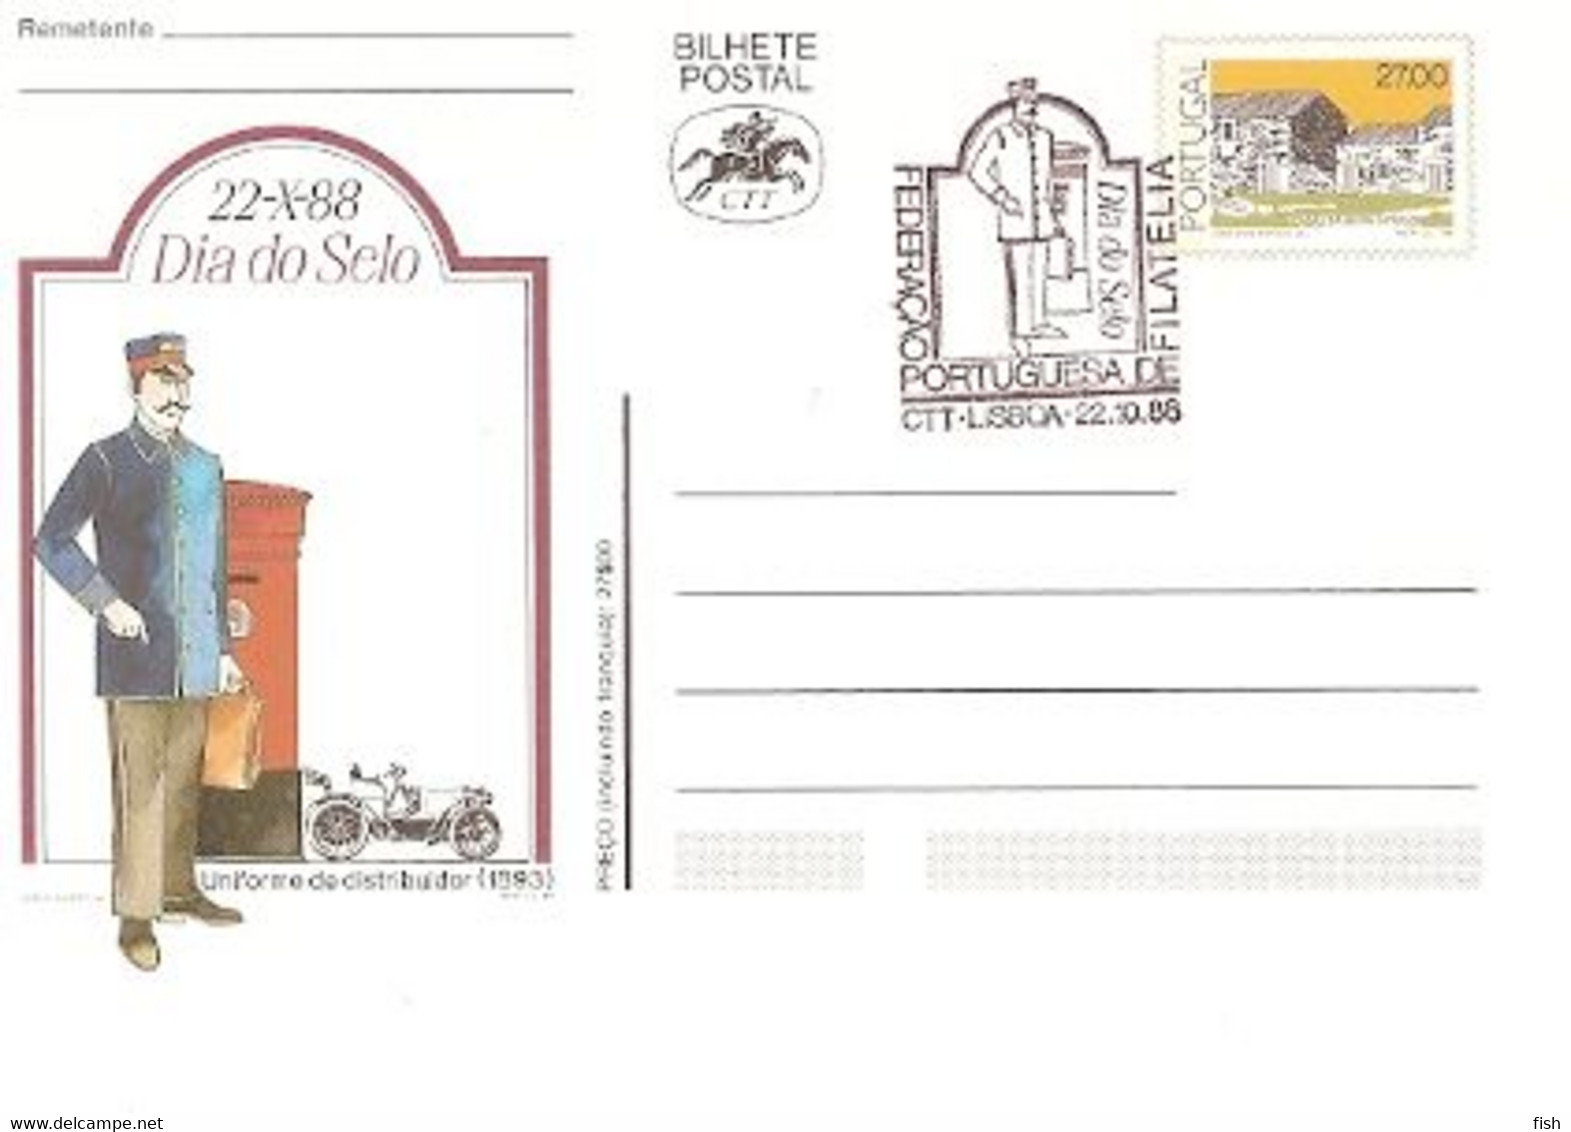 Portugal & Postal Stationery, Stamp Day, Postman Uniform, Lisbon 1988 (7688) - Poste & Facteurs